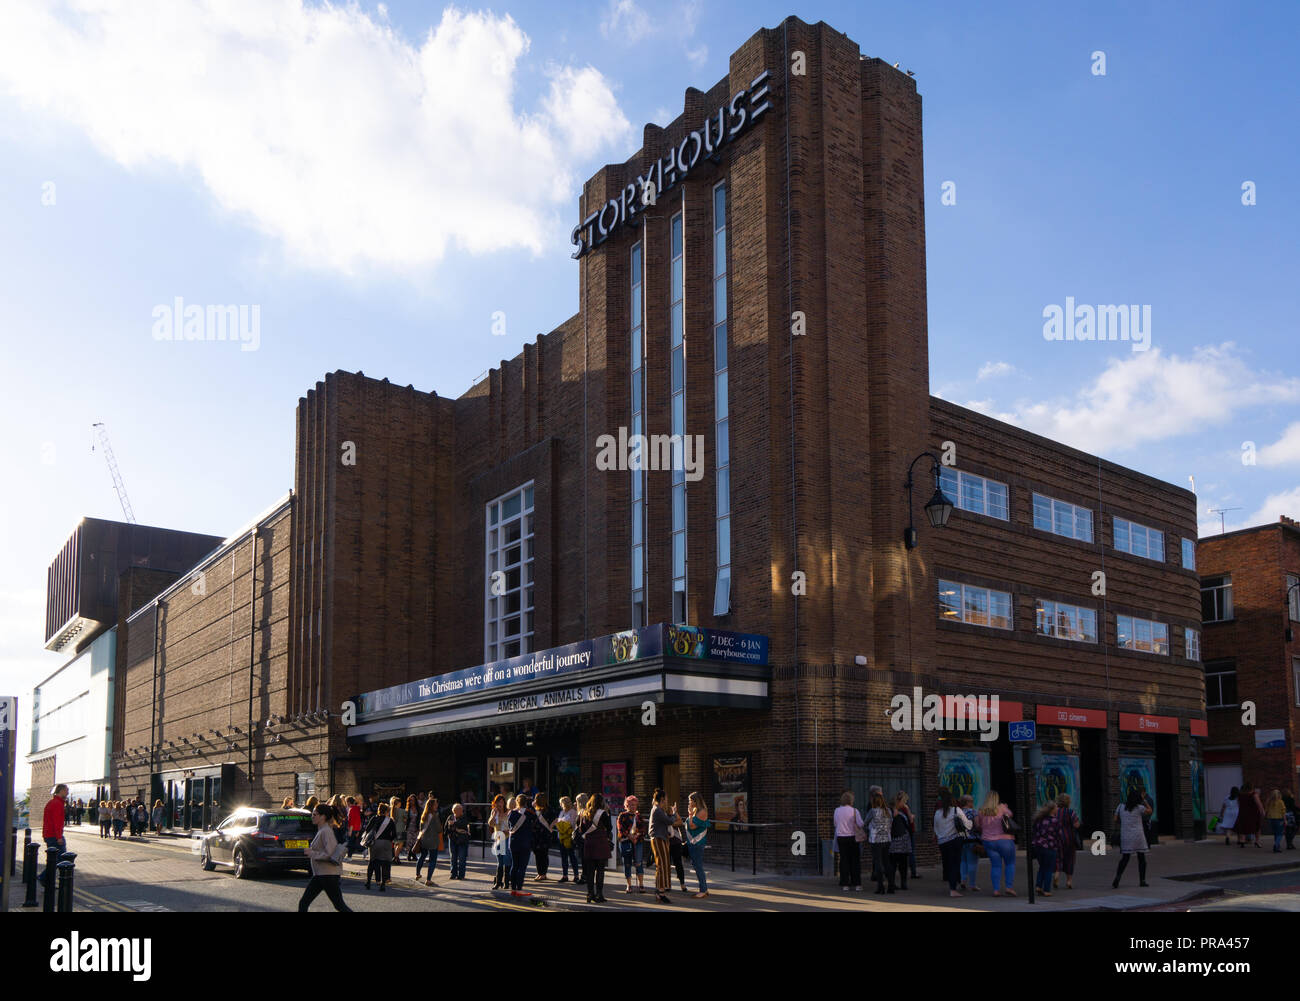 Storyhouse Kino- und Veranstaltungshalle, Chester, zuvor das Odeon Kino. Bild im September 2018 übernommen. Stockfoto